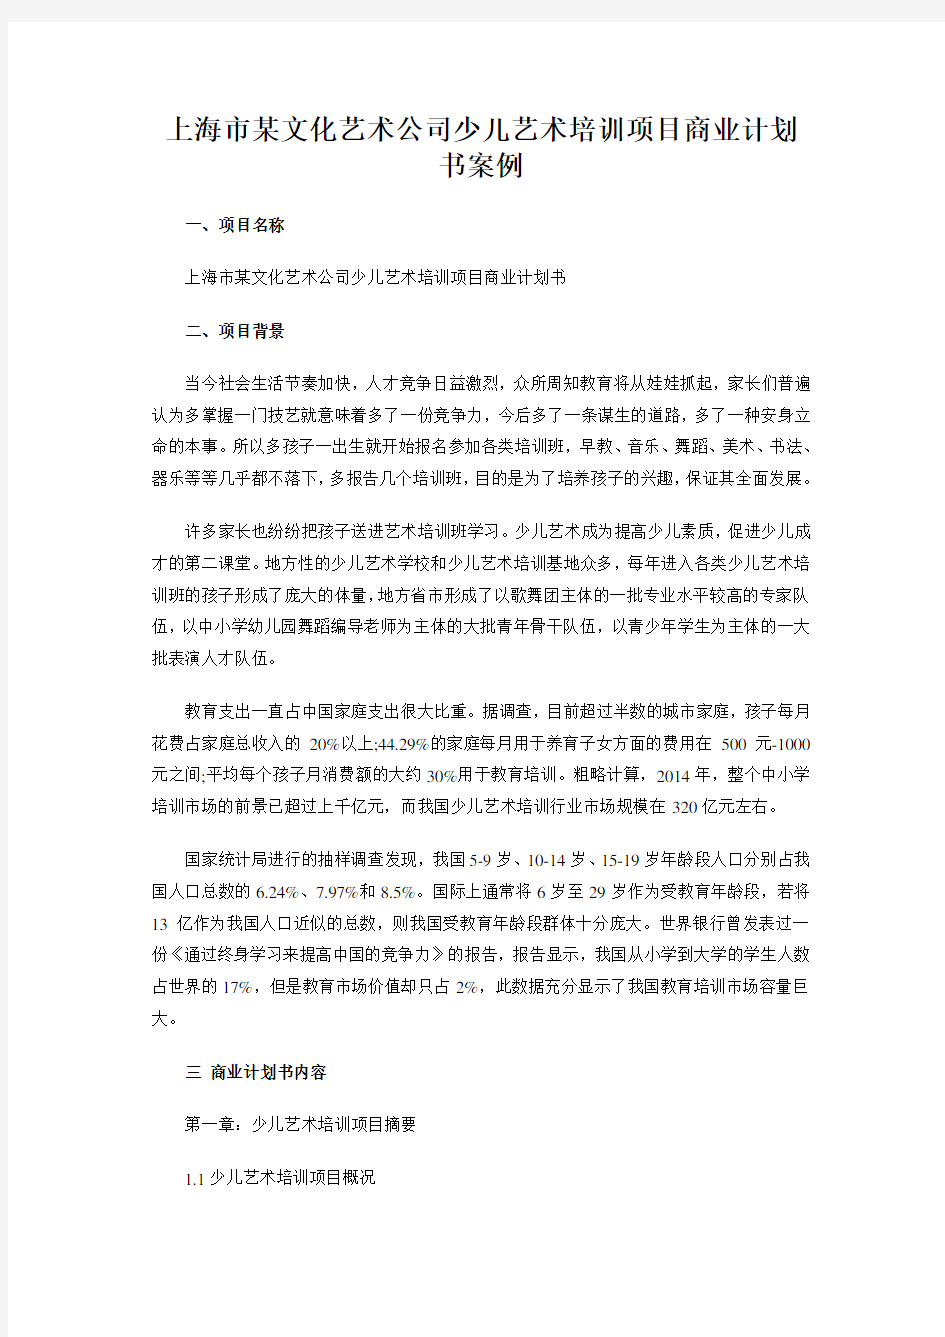 上海市某文化艺术公司少儿艺术培训项目商业计划书案例.doc